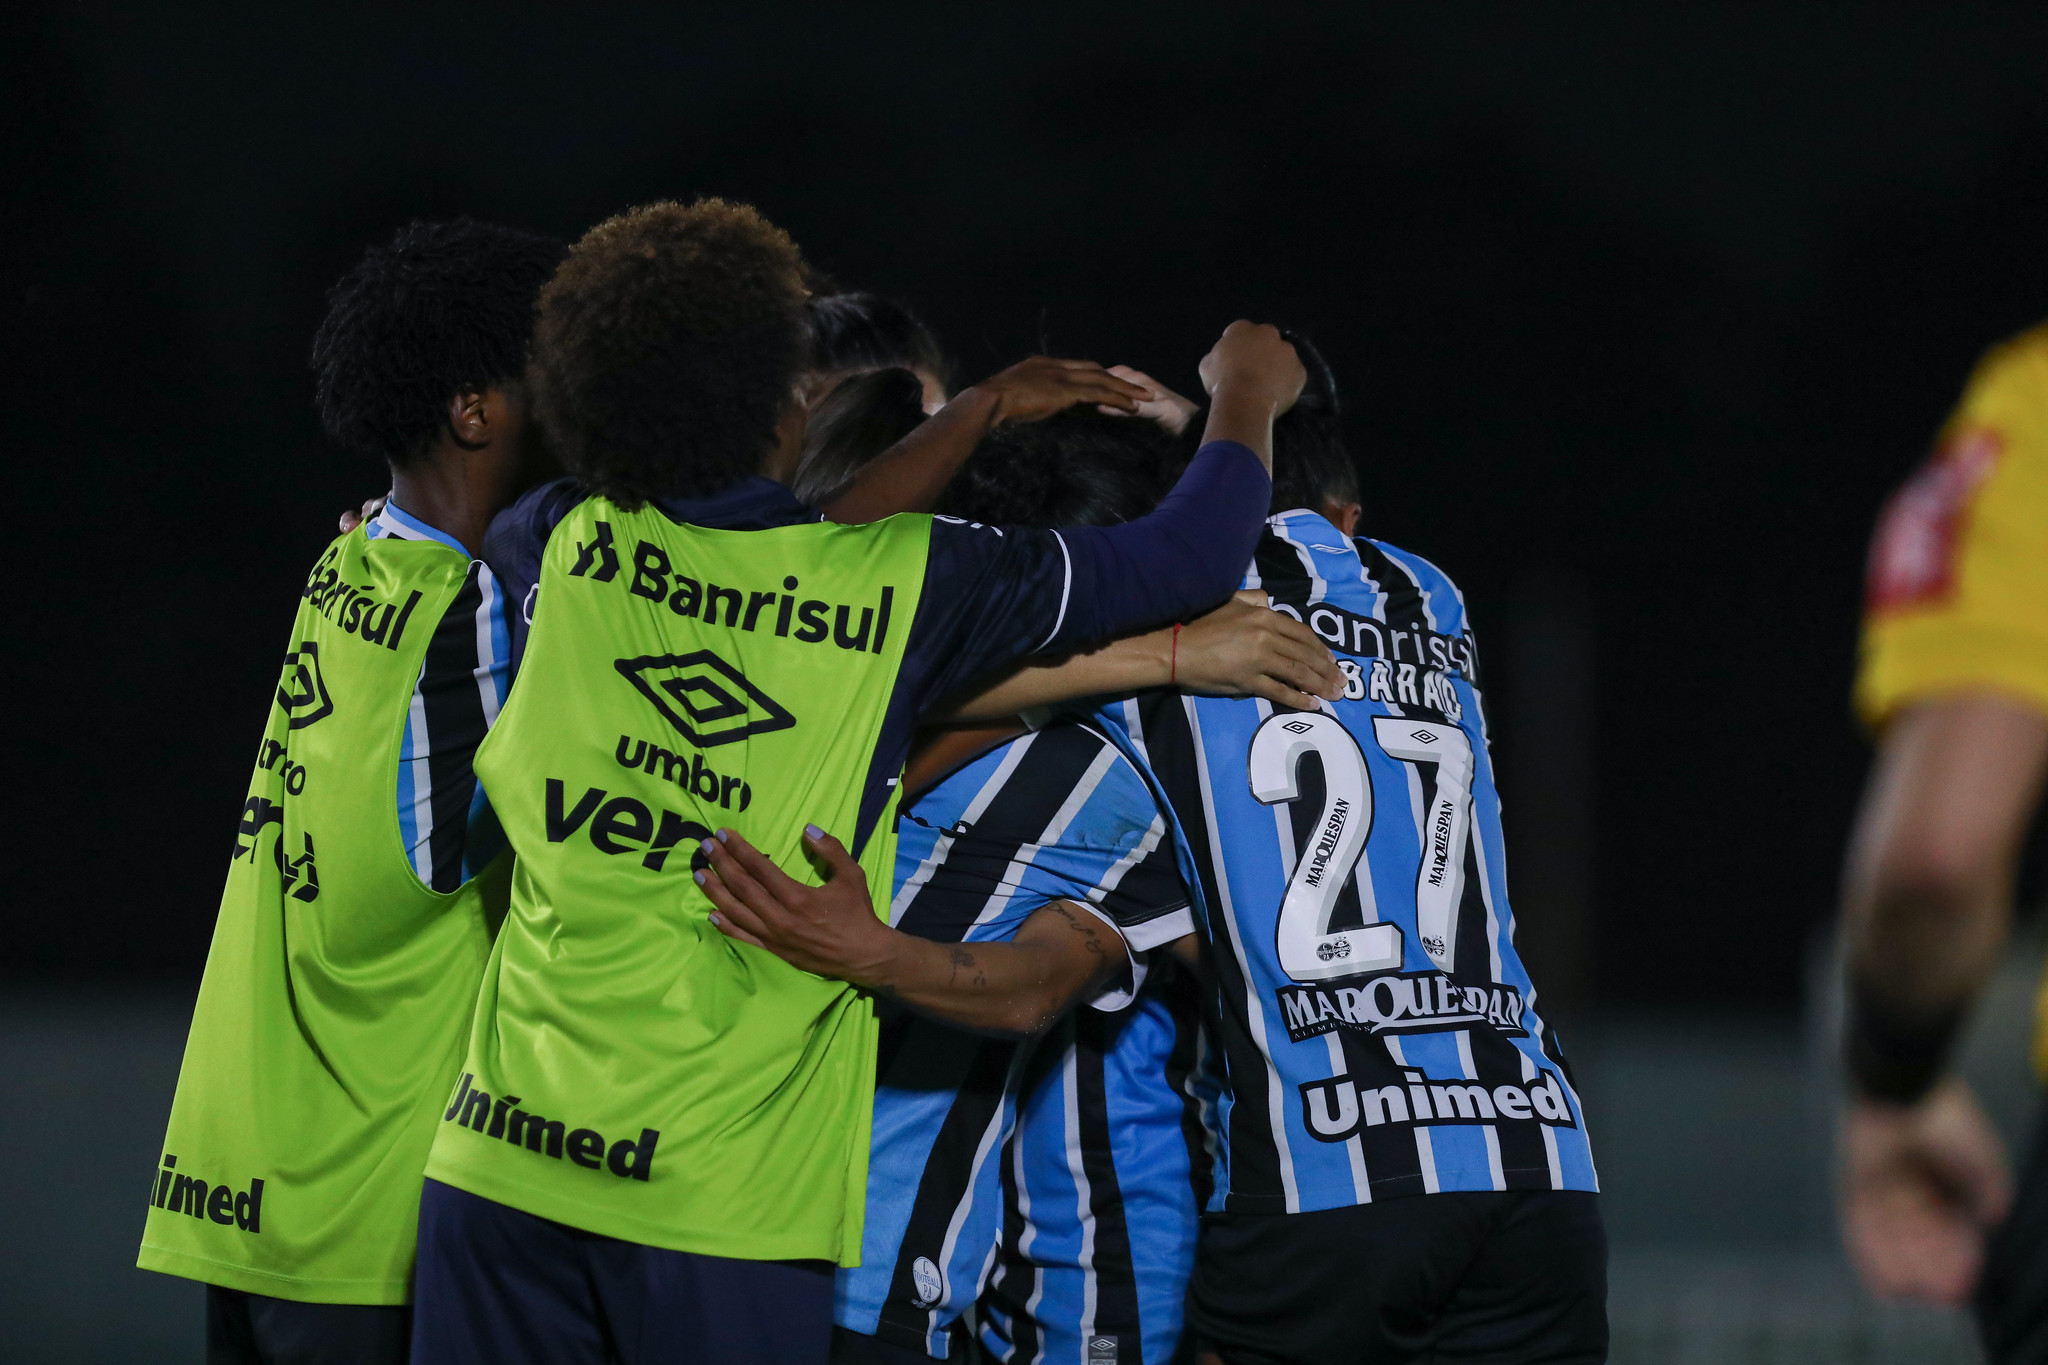 Veja os destaques do título gaúcho sub-20 do Grêmio que podem